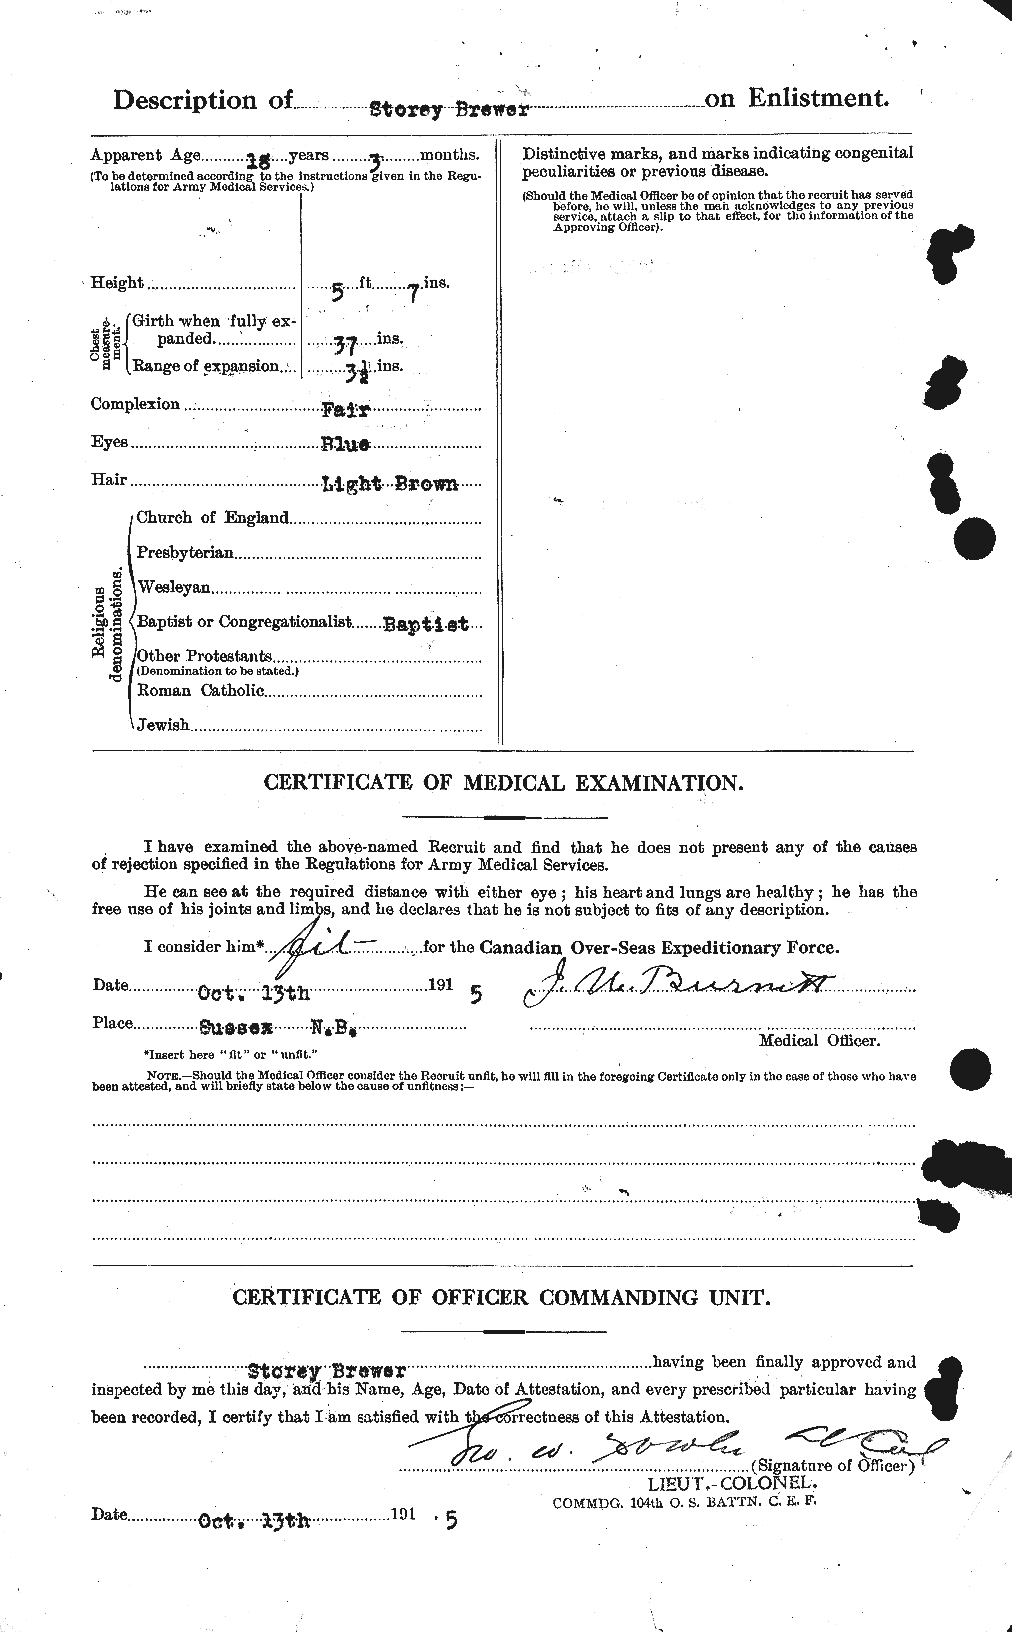 Dossiers du Personnel de la Première Guerre mondiale - CEC 260805b